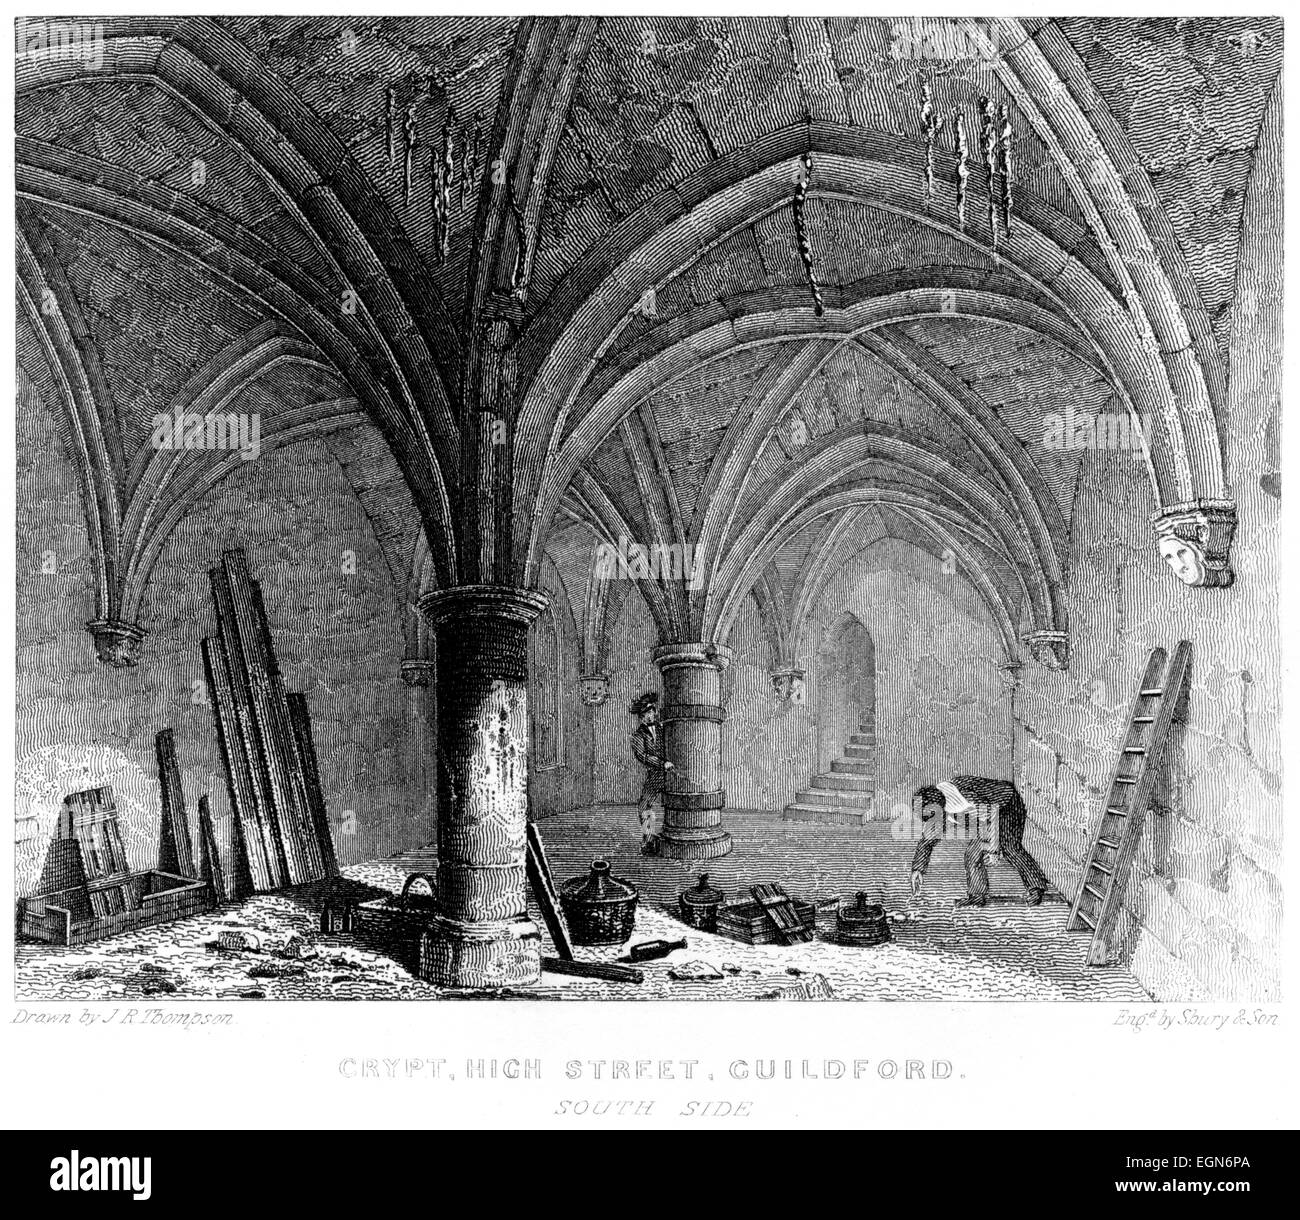 Incisione della cripta (Undercroft) High Street, Guildford - Lato Sud, Surrey scansionati ad alta res da un libro stampato nel 1850. Foto Stock